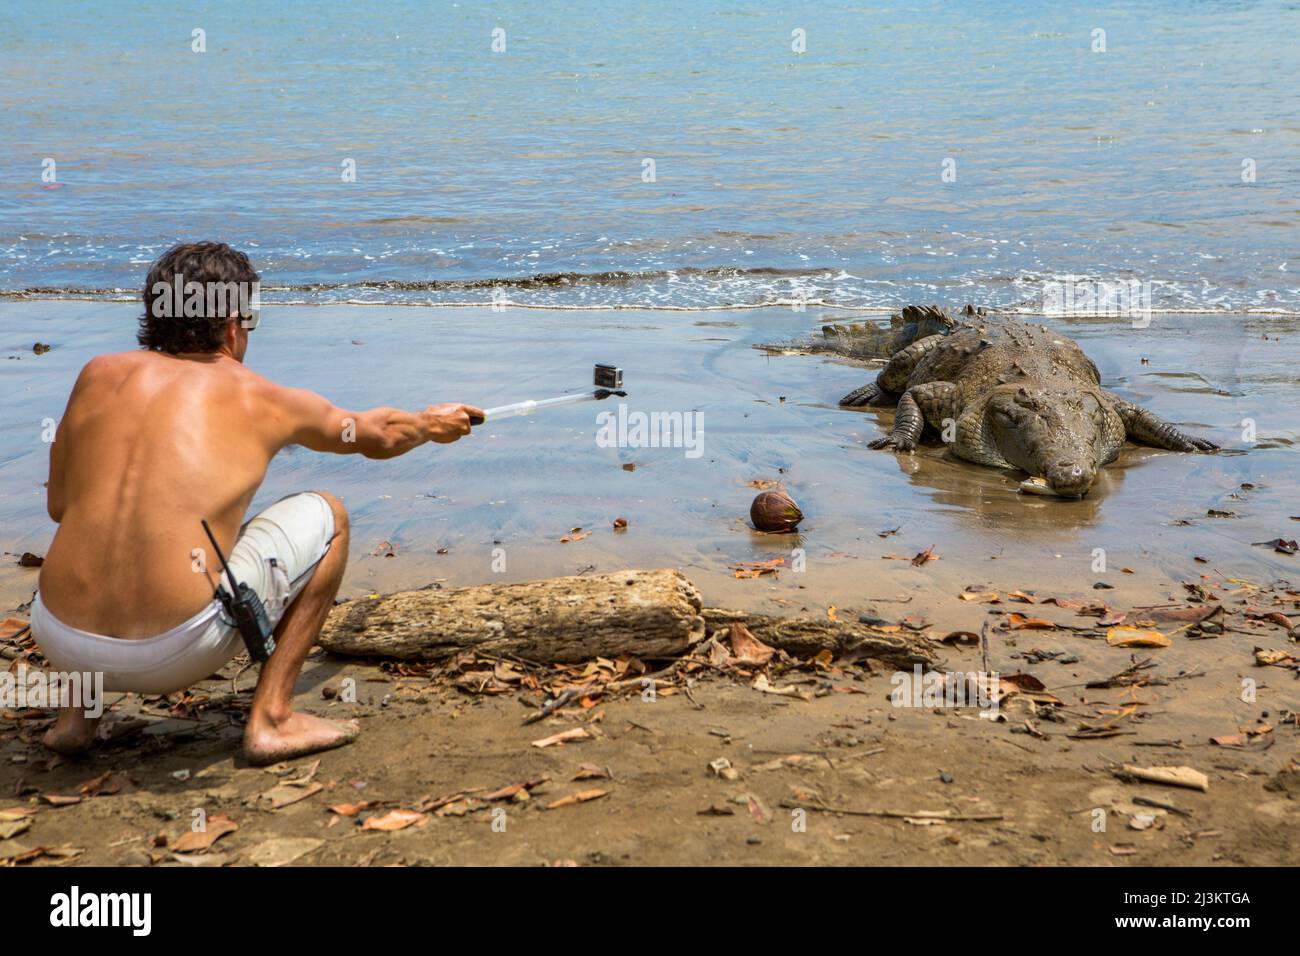 Dans le parc national Isla Coiba, un visiteur utilise une rallonge télescopique fixée à un appareil photo pour photographier un crocodile américain (Crocodylus acutus) à... Banque D'Images